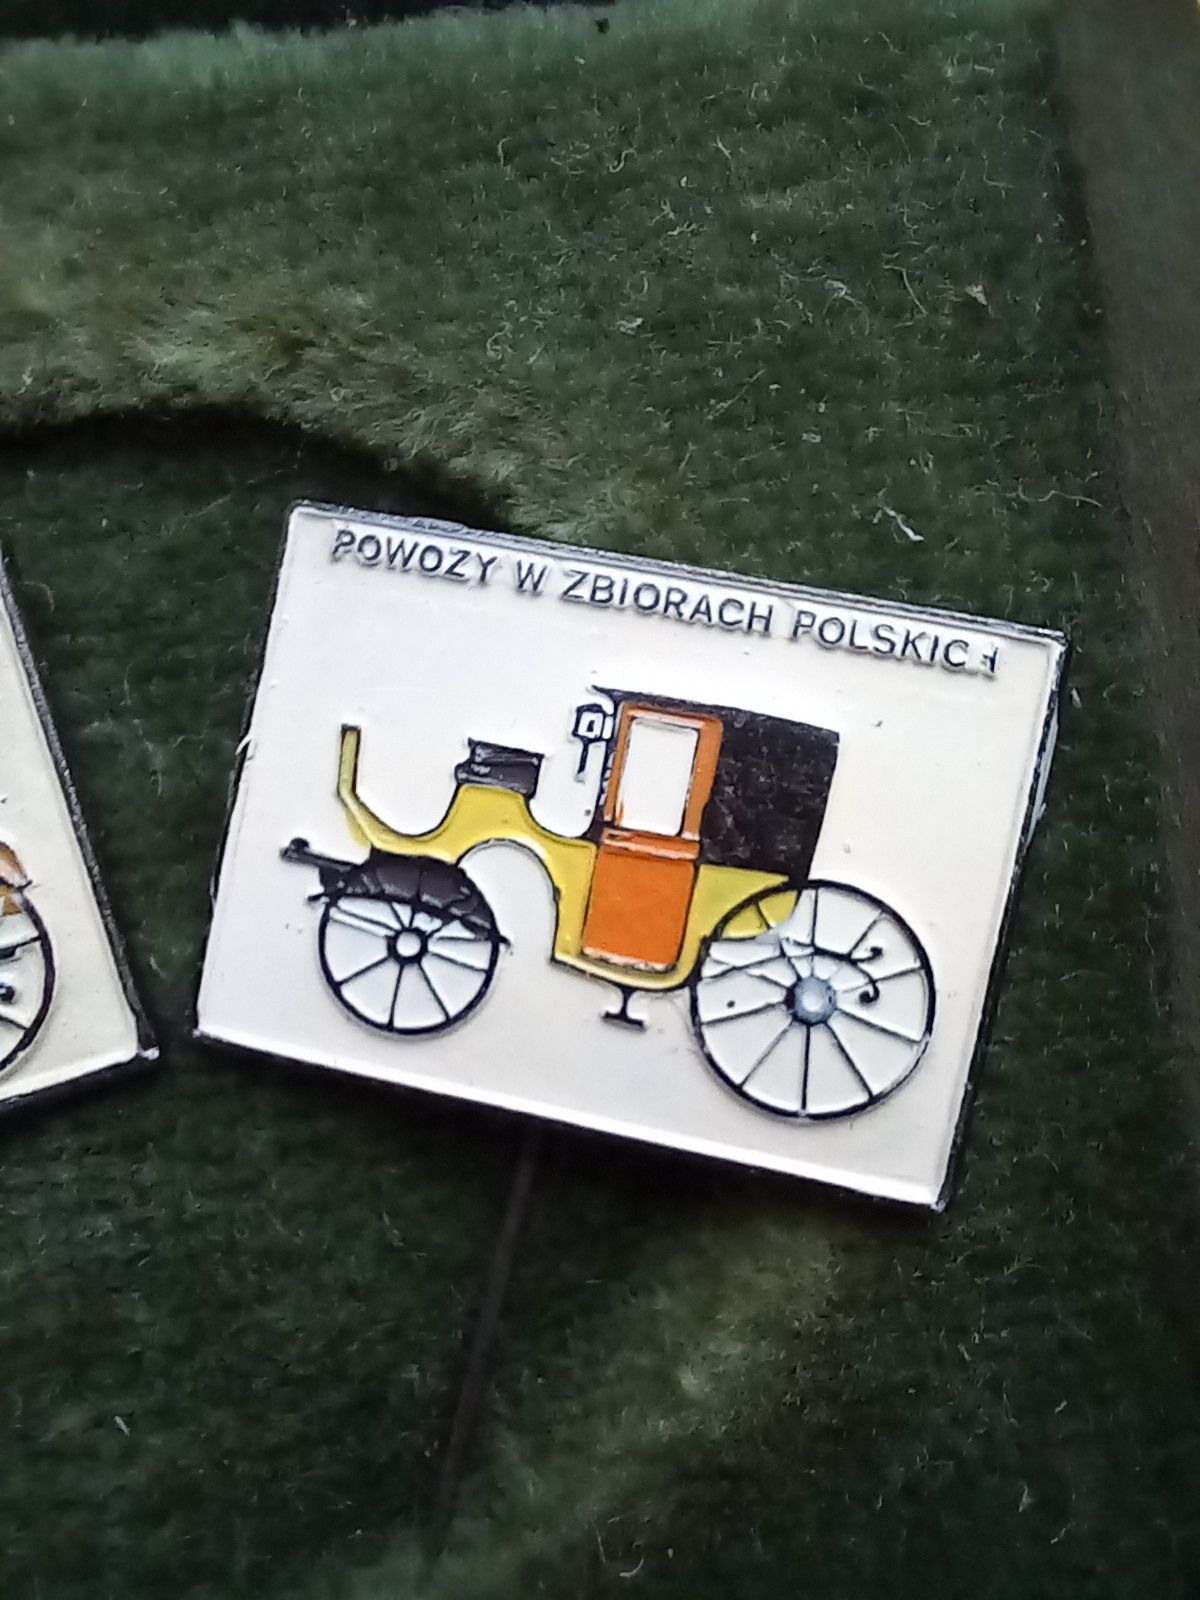 Powozy w zbiorach Polskich pin przypinka broszka metalowa